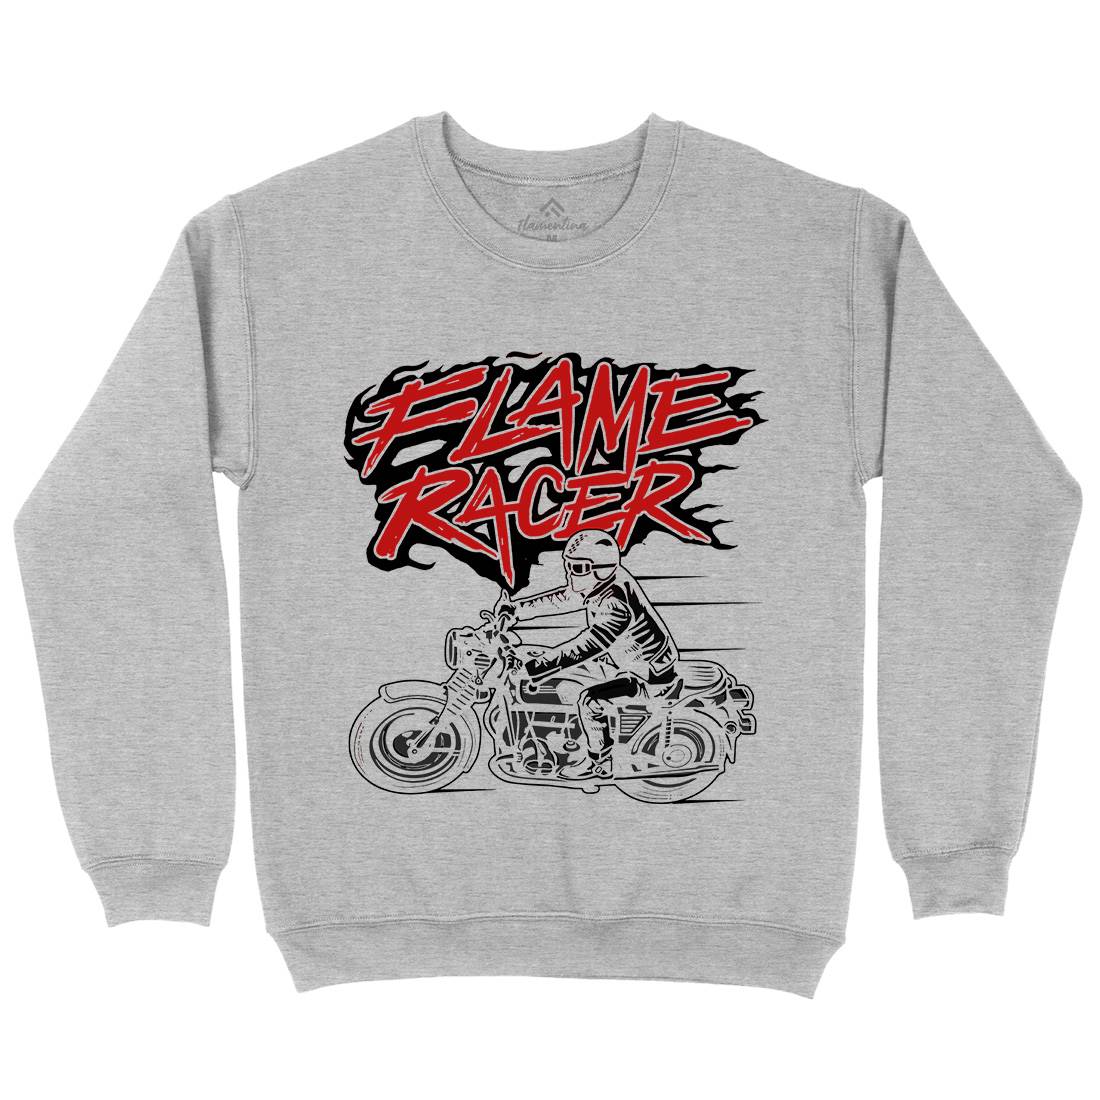 Flame Racer Kids Crew Neck Sweatshirt Motorcycles A530